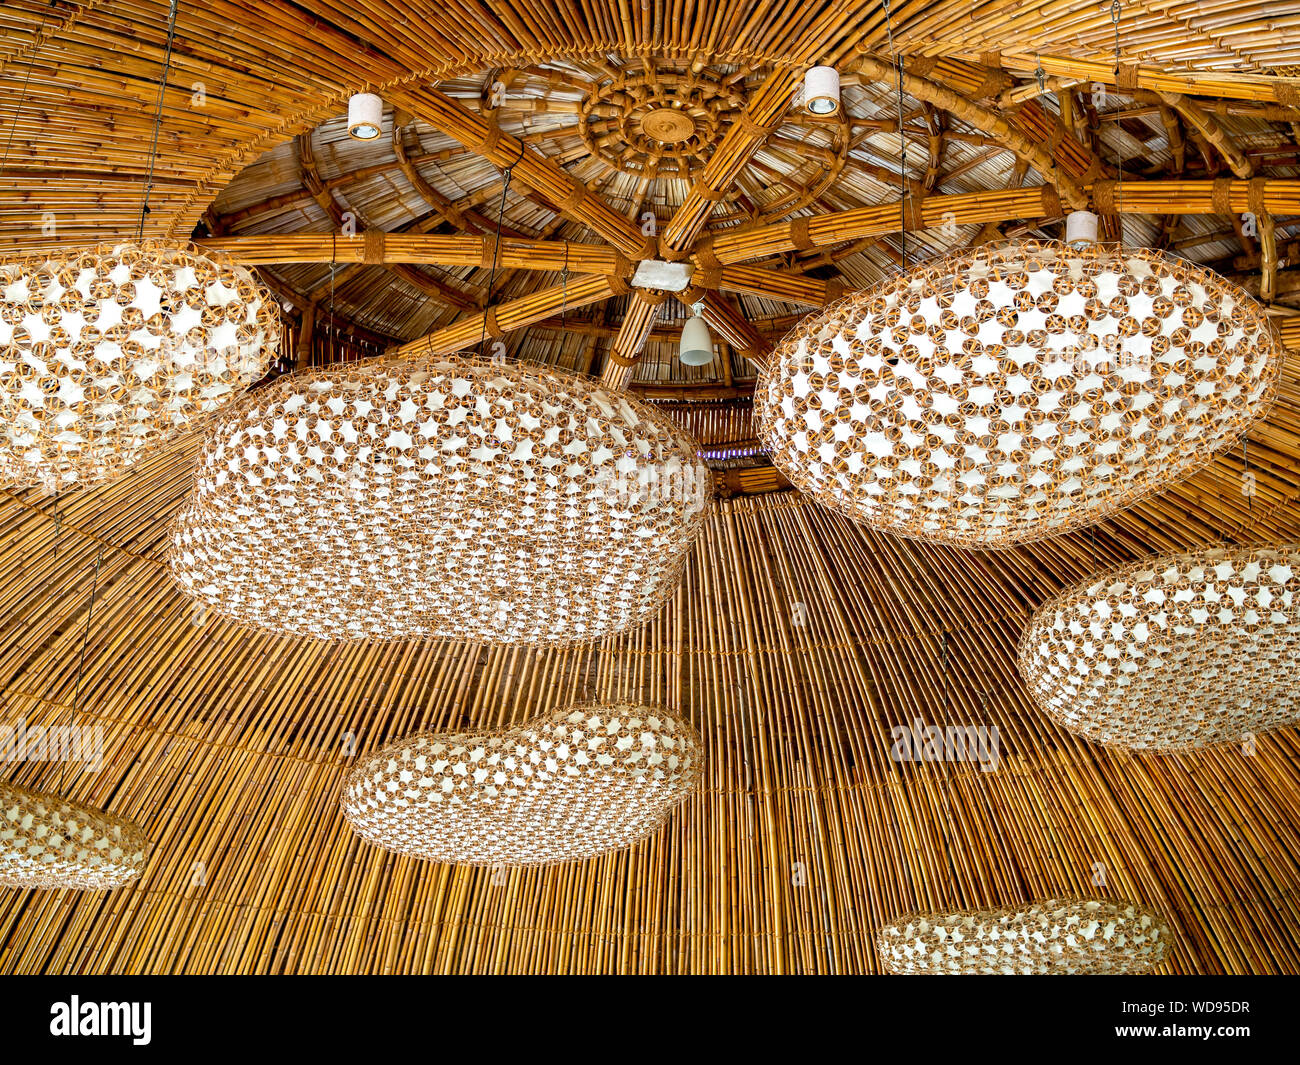 Hermosa moderna lámpara de techo de bambú tejidas a mano de decoración en el techo. Foto de stock